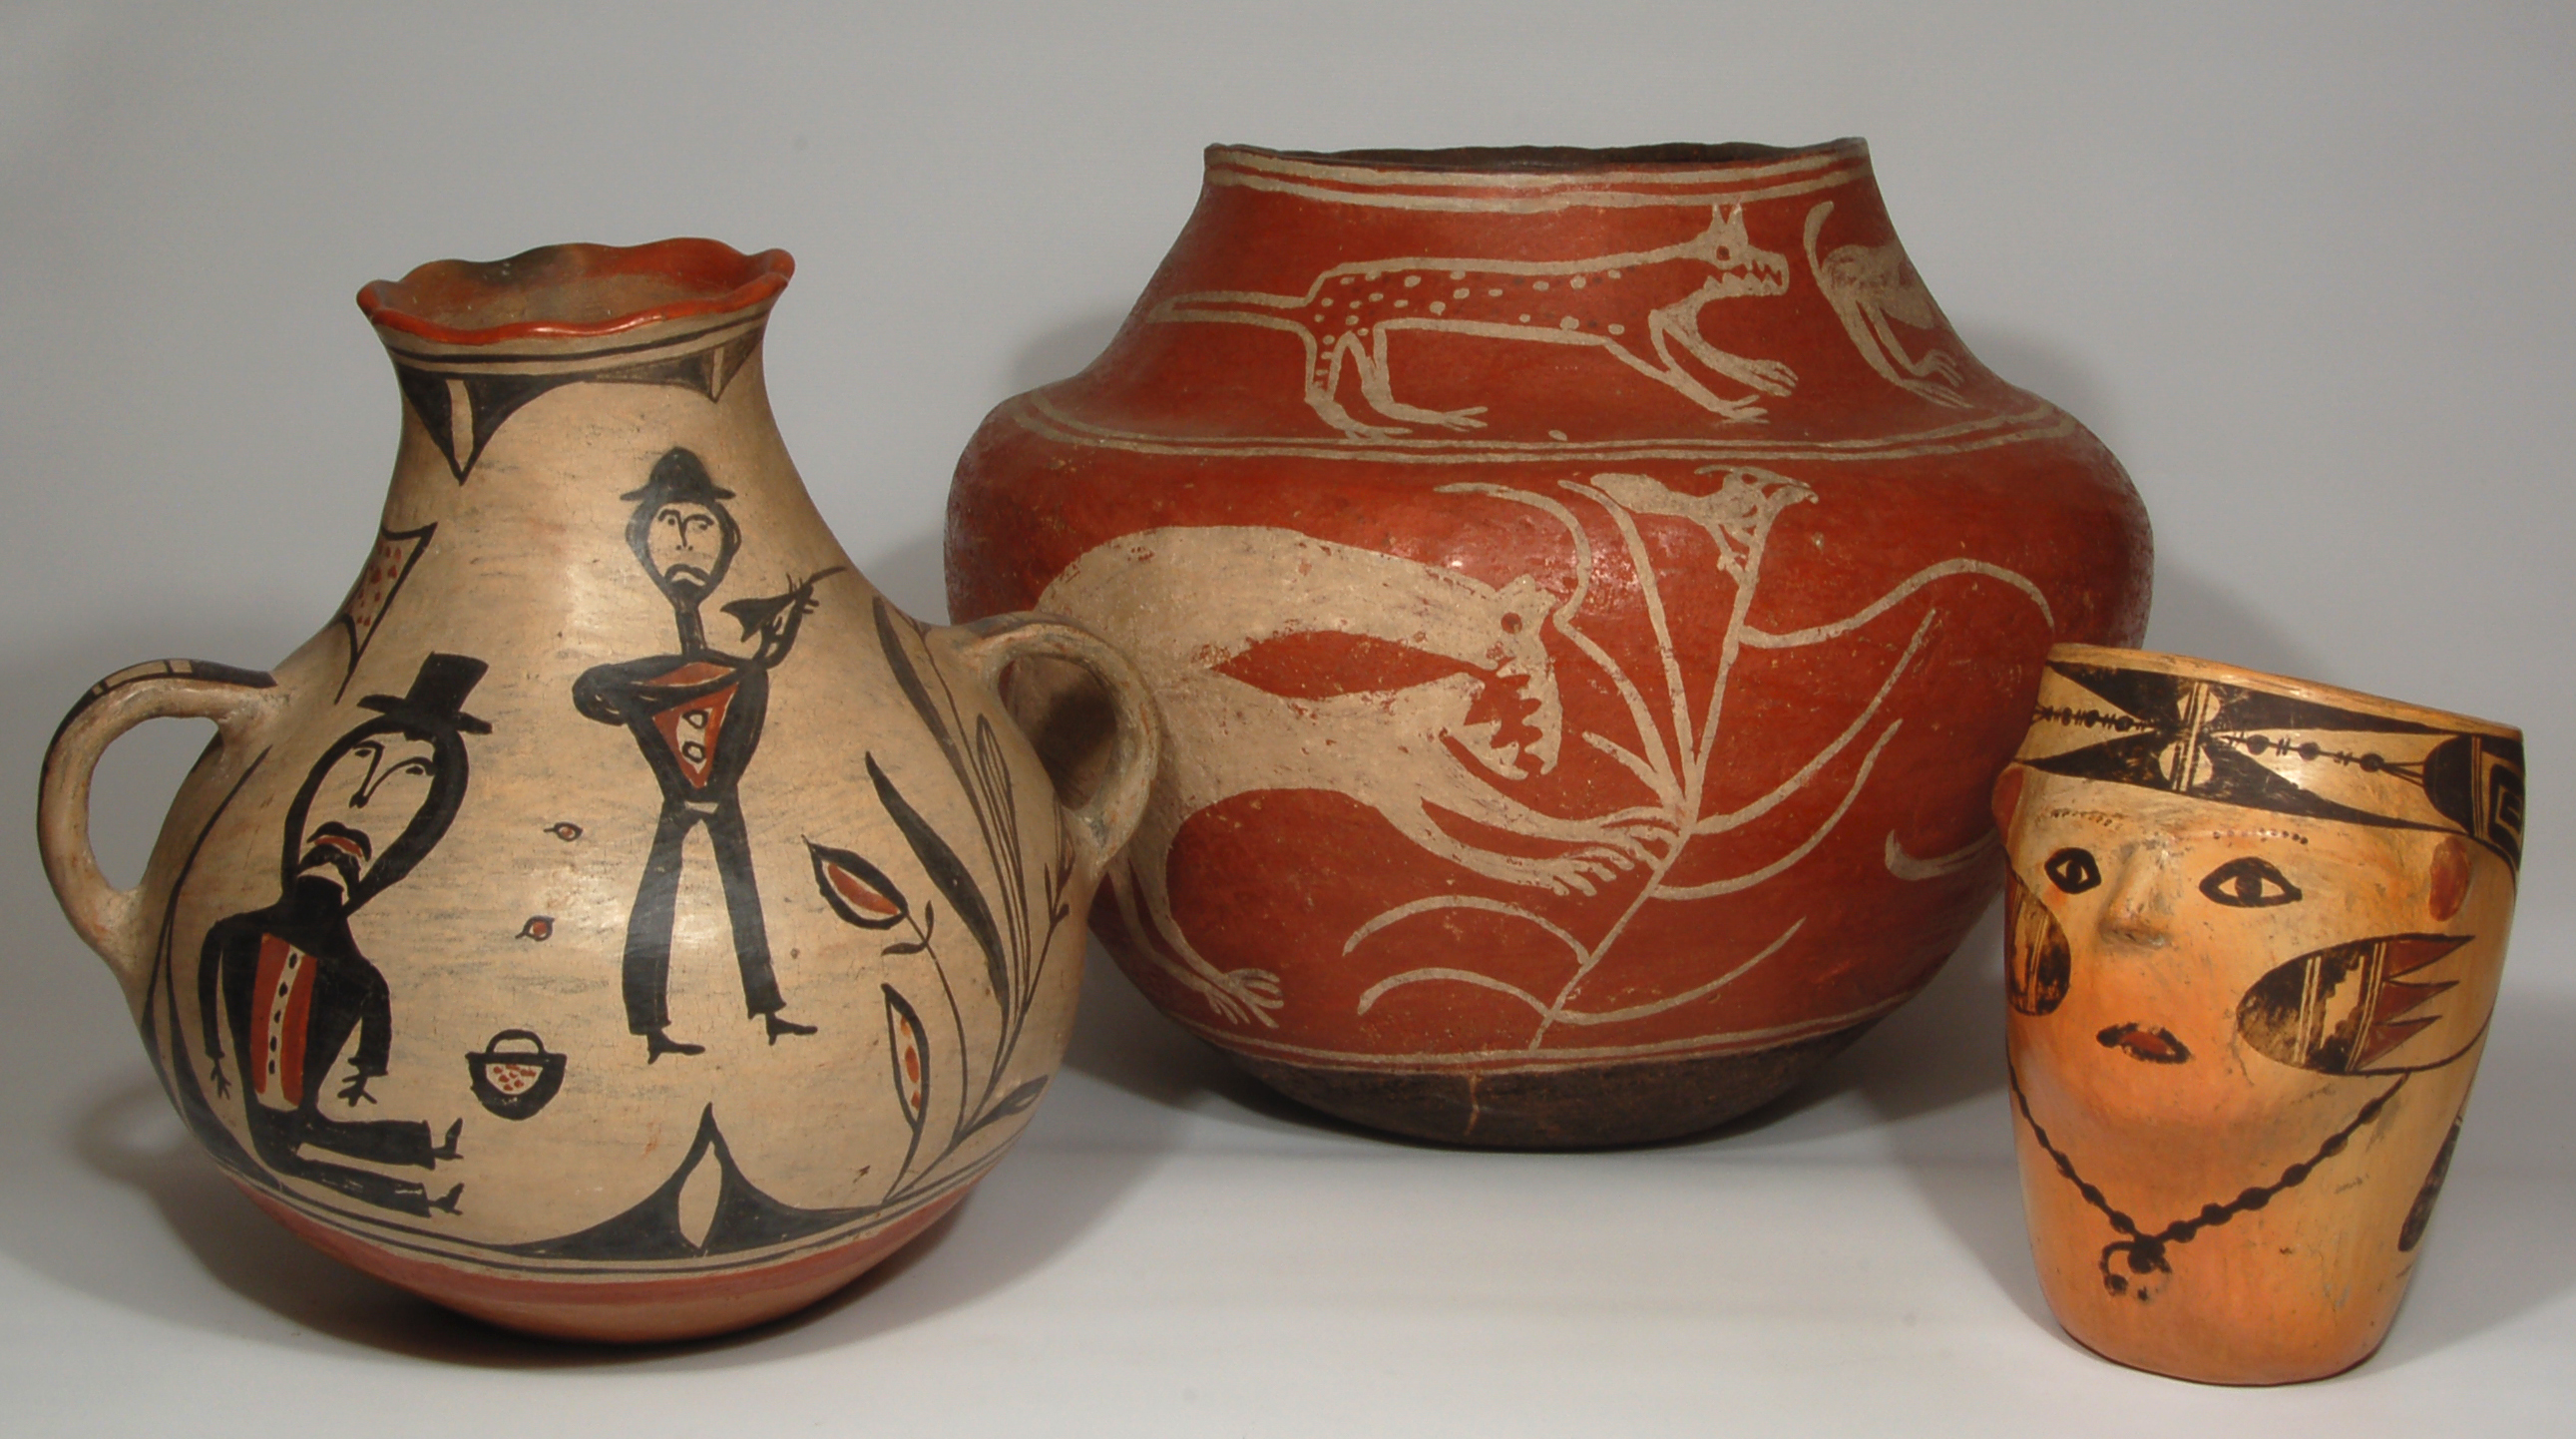 Unique and Unusual Pueblo Pottery Exhibit